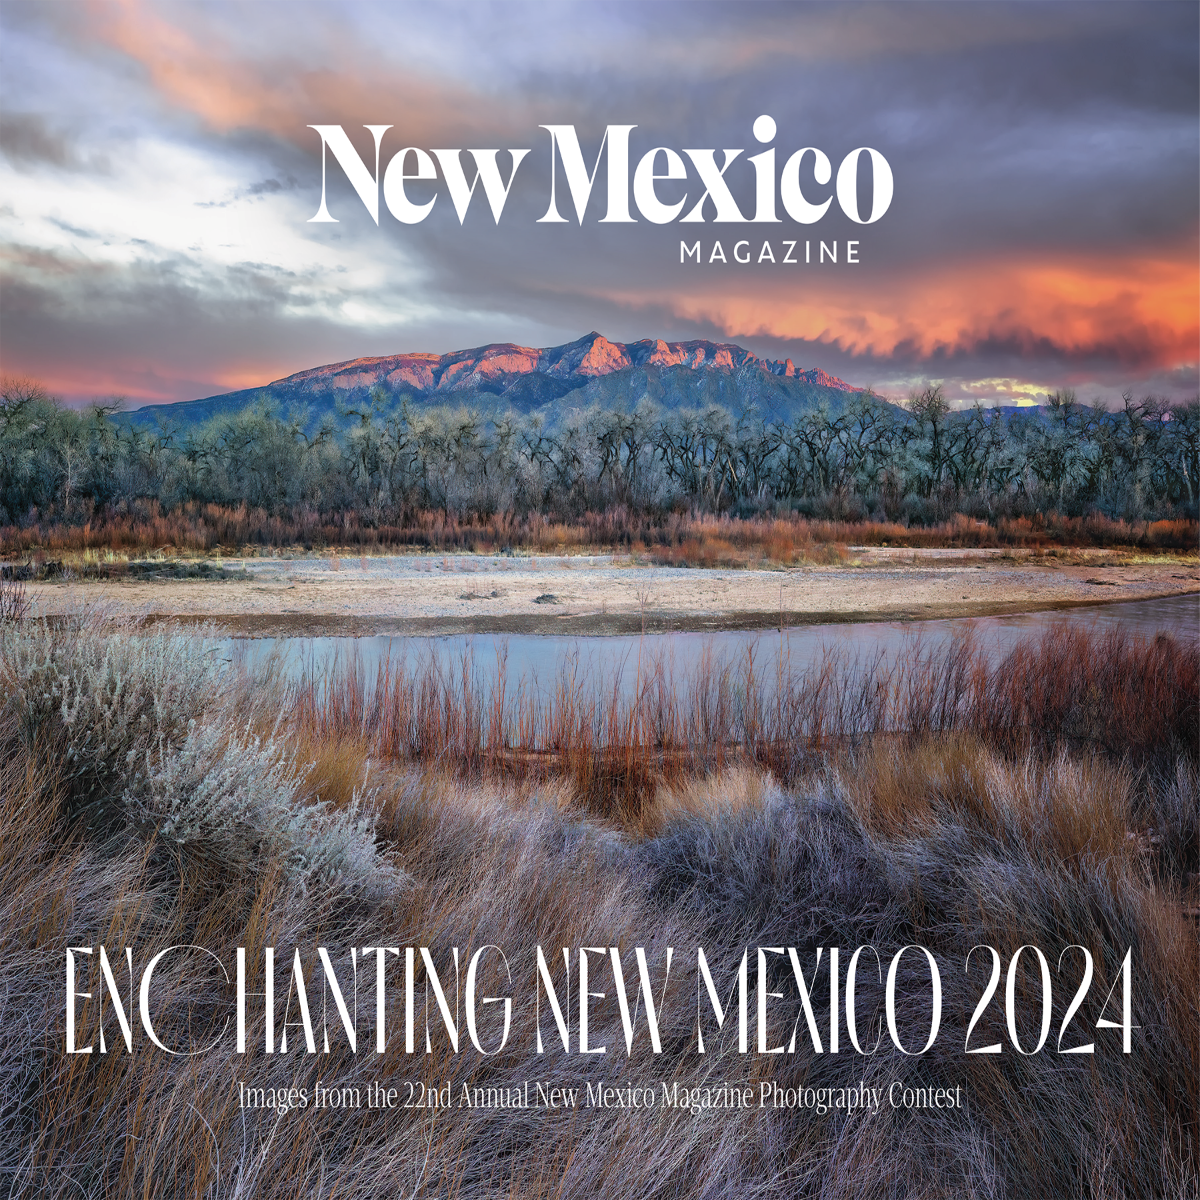 2024 Enchanting New Mexico Calendar